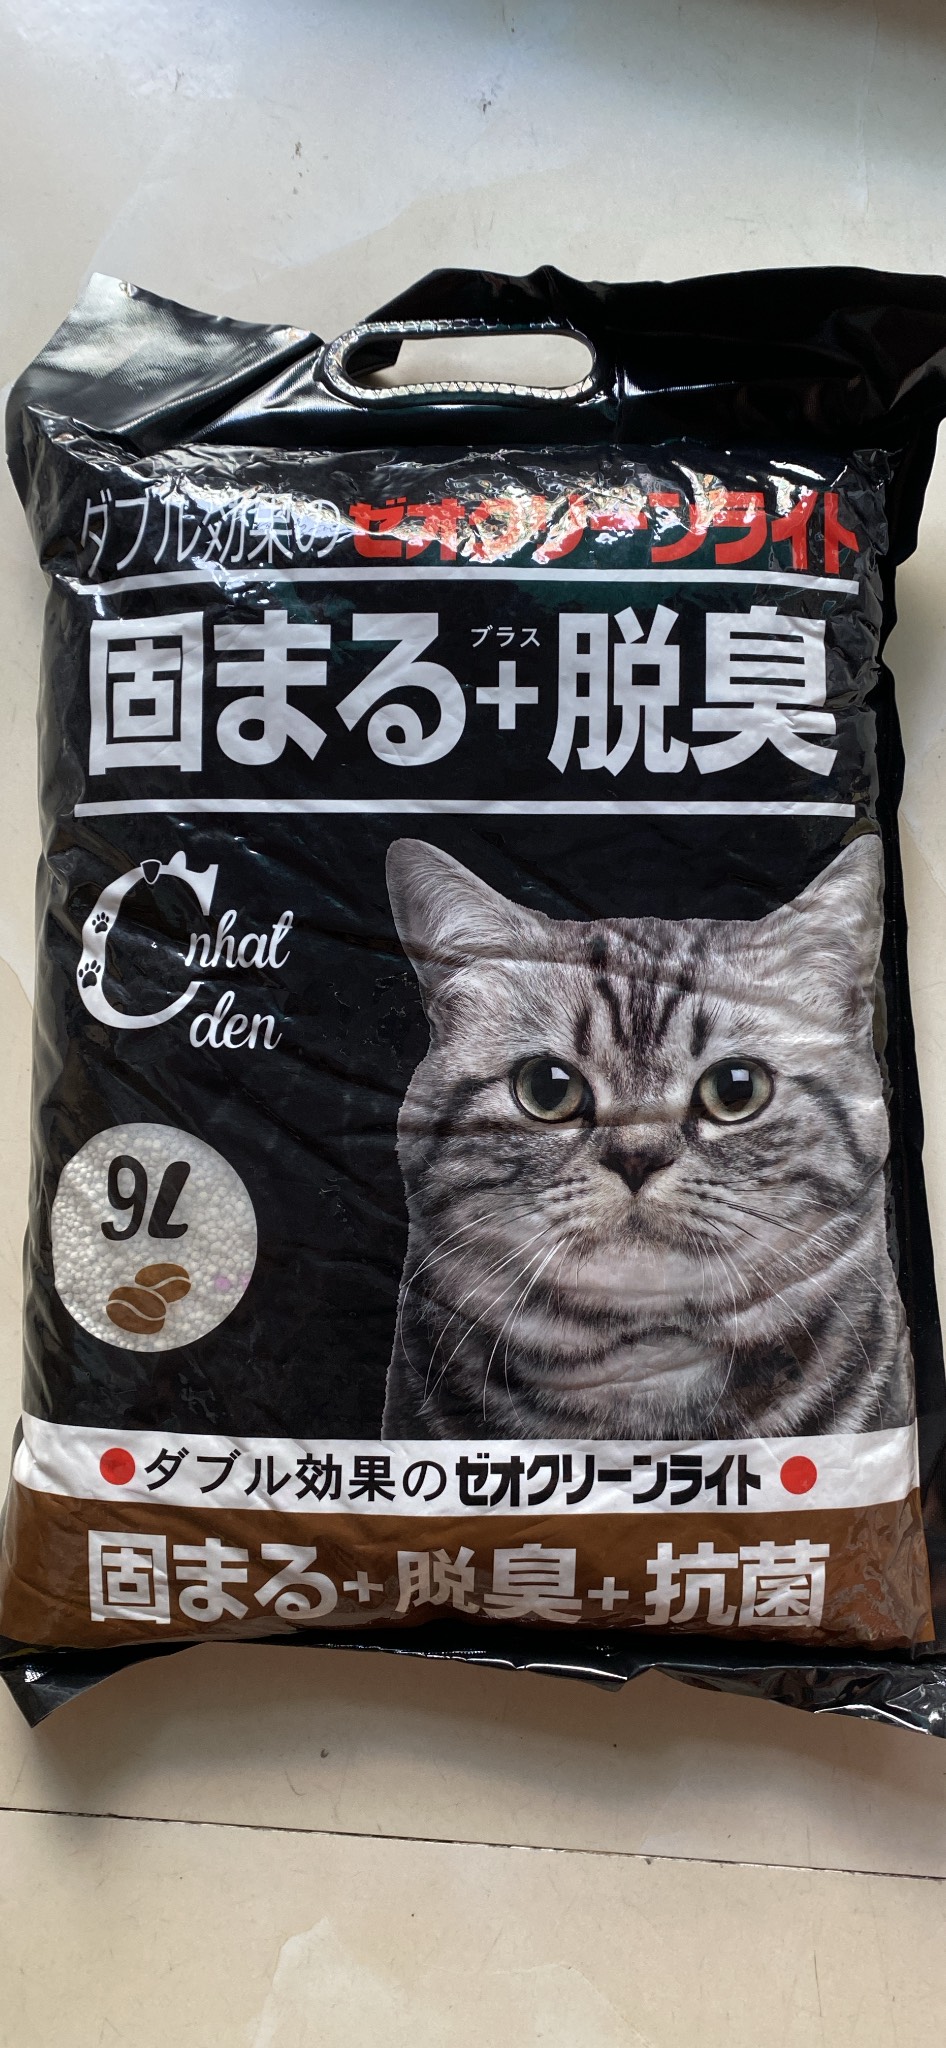 Cát Vệ Sinh Cho Mèo - Cát Nhật 8L 